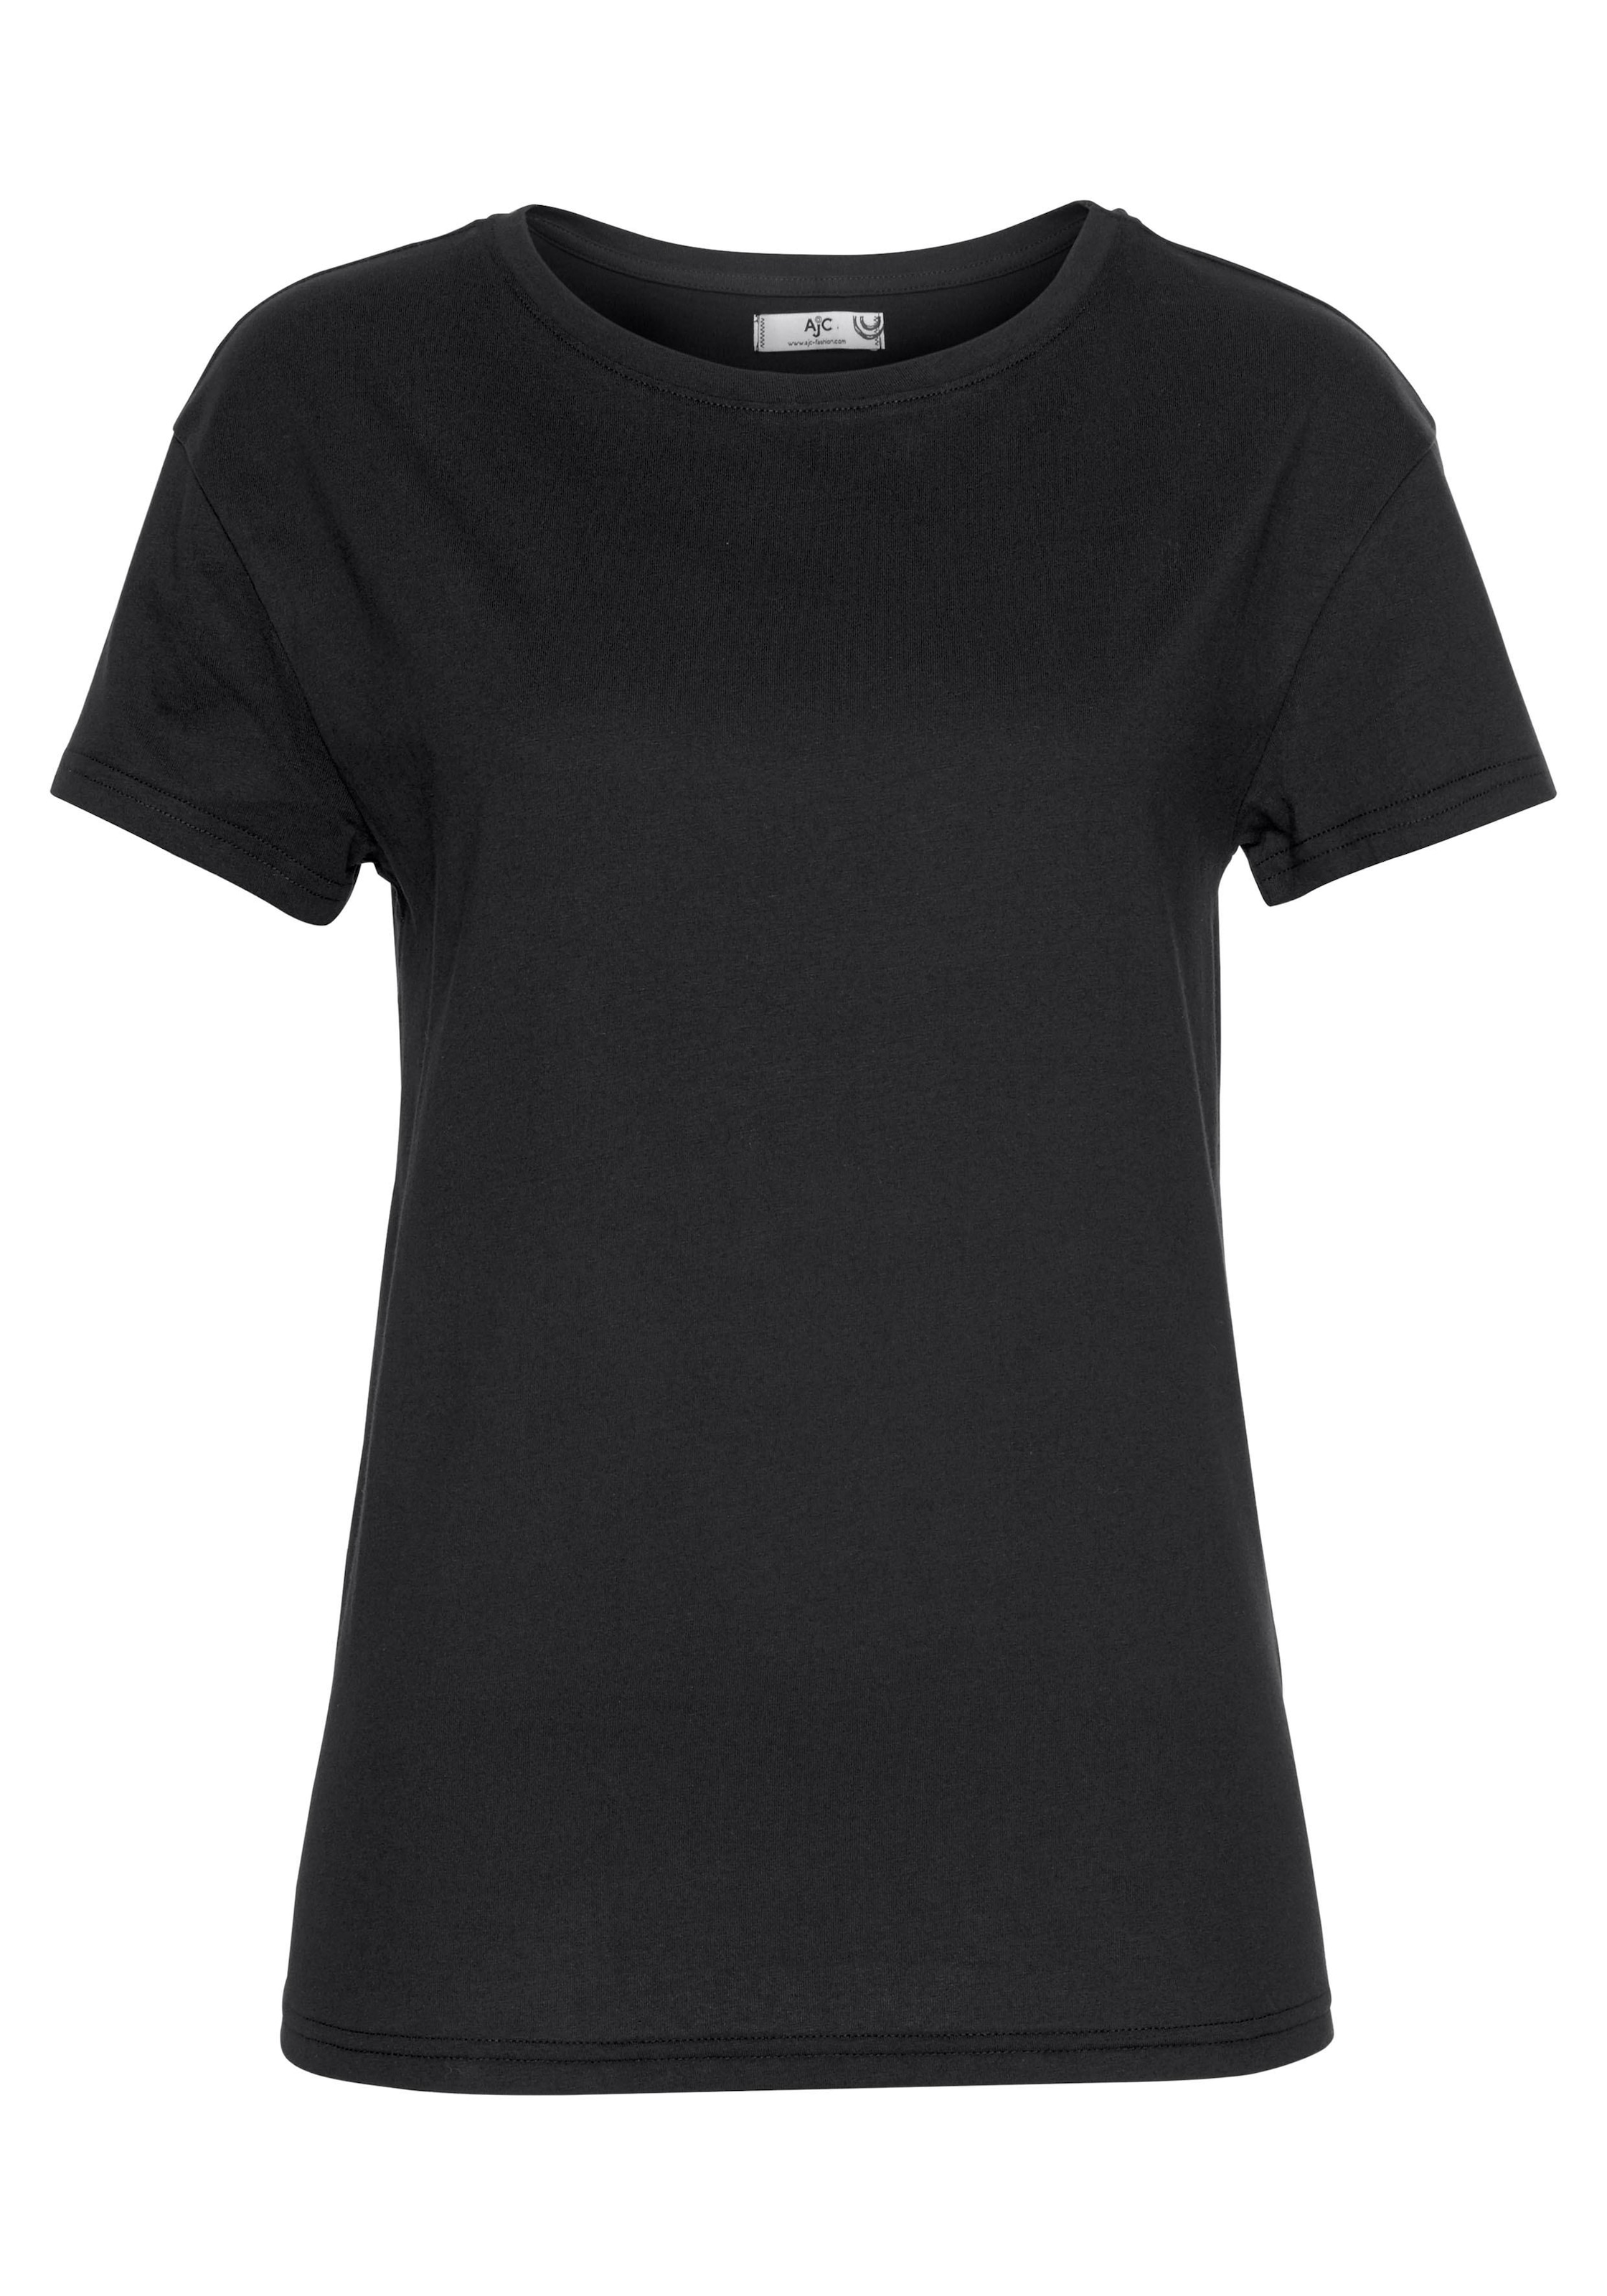 AJC T-Shirt, Oversized-Look im auf NEUE - KOLLEKTION trendigen versandkostenfrei